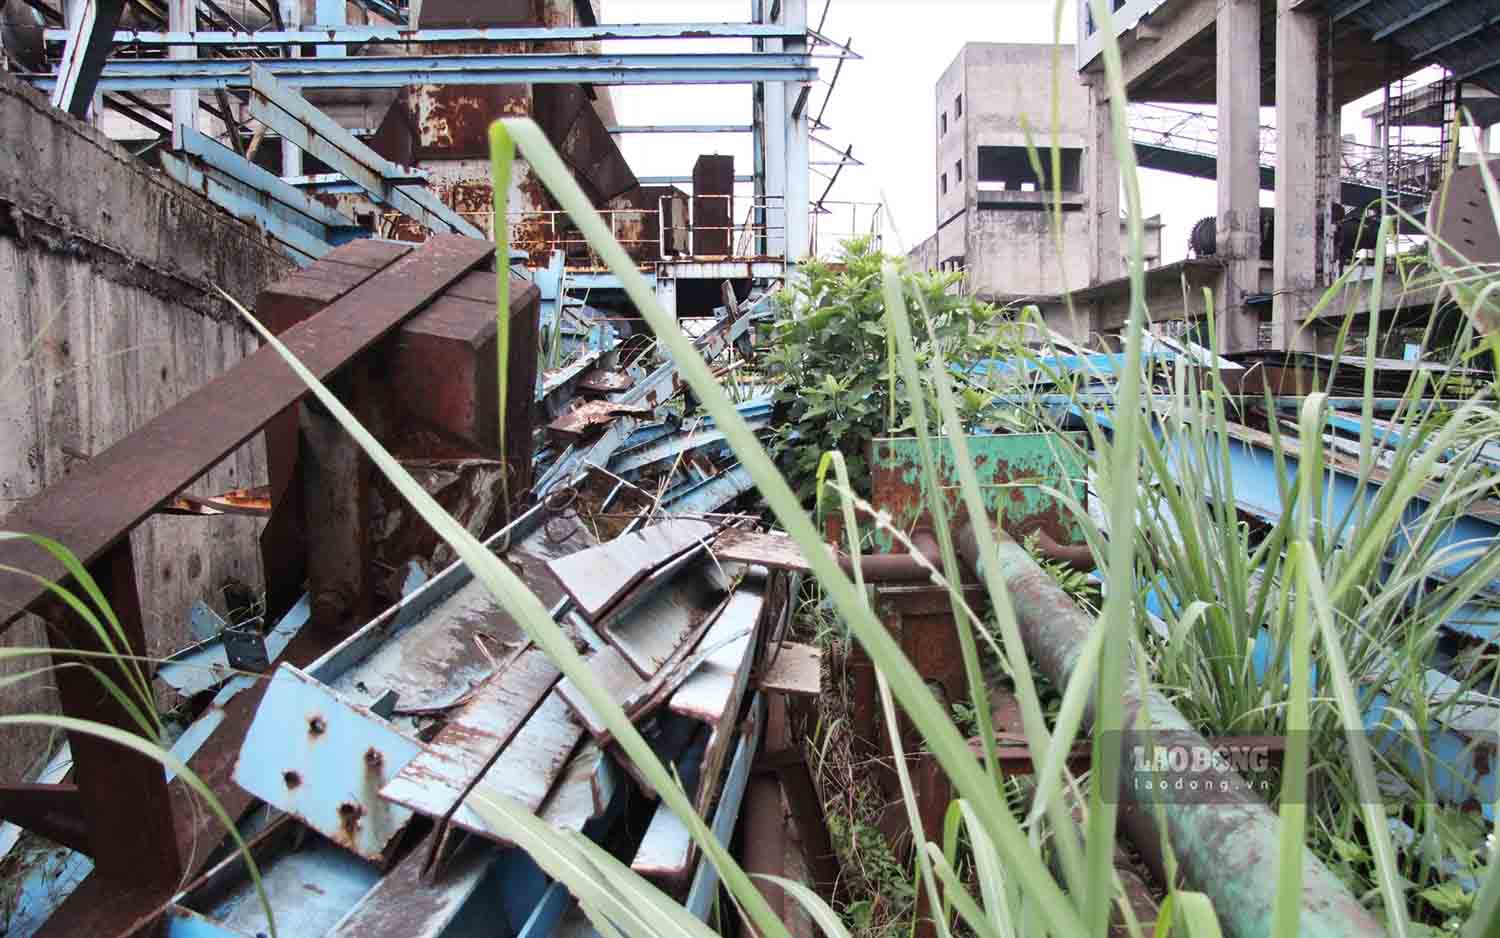 Khảo sát dự án TISCO 2 vào cuối tháng 7.2022, Thủ tướng Phạm Minh Chính đã bày tỏ sự “xót ruột” và “sốt ruột” khi chứng kiến nhiều hạng mục của dự án đang bỏ hoang, nhiều vật tư, thiết bị đã hư hỏng, gỉ sét, nằm phủ bạt ngoài trời nhiều năm nay.